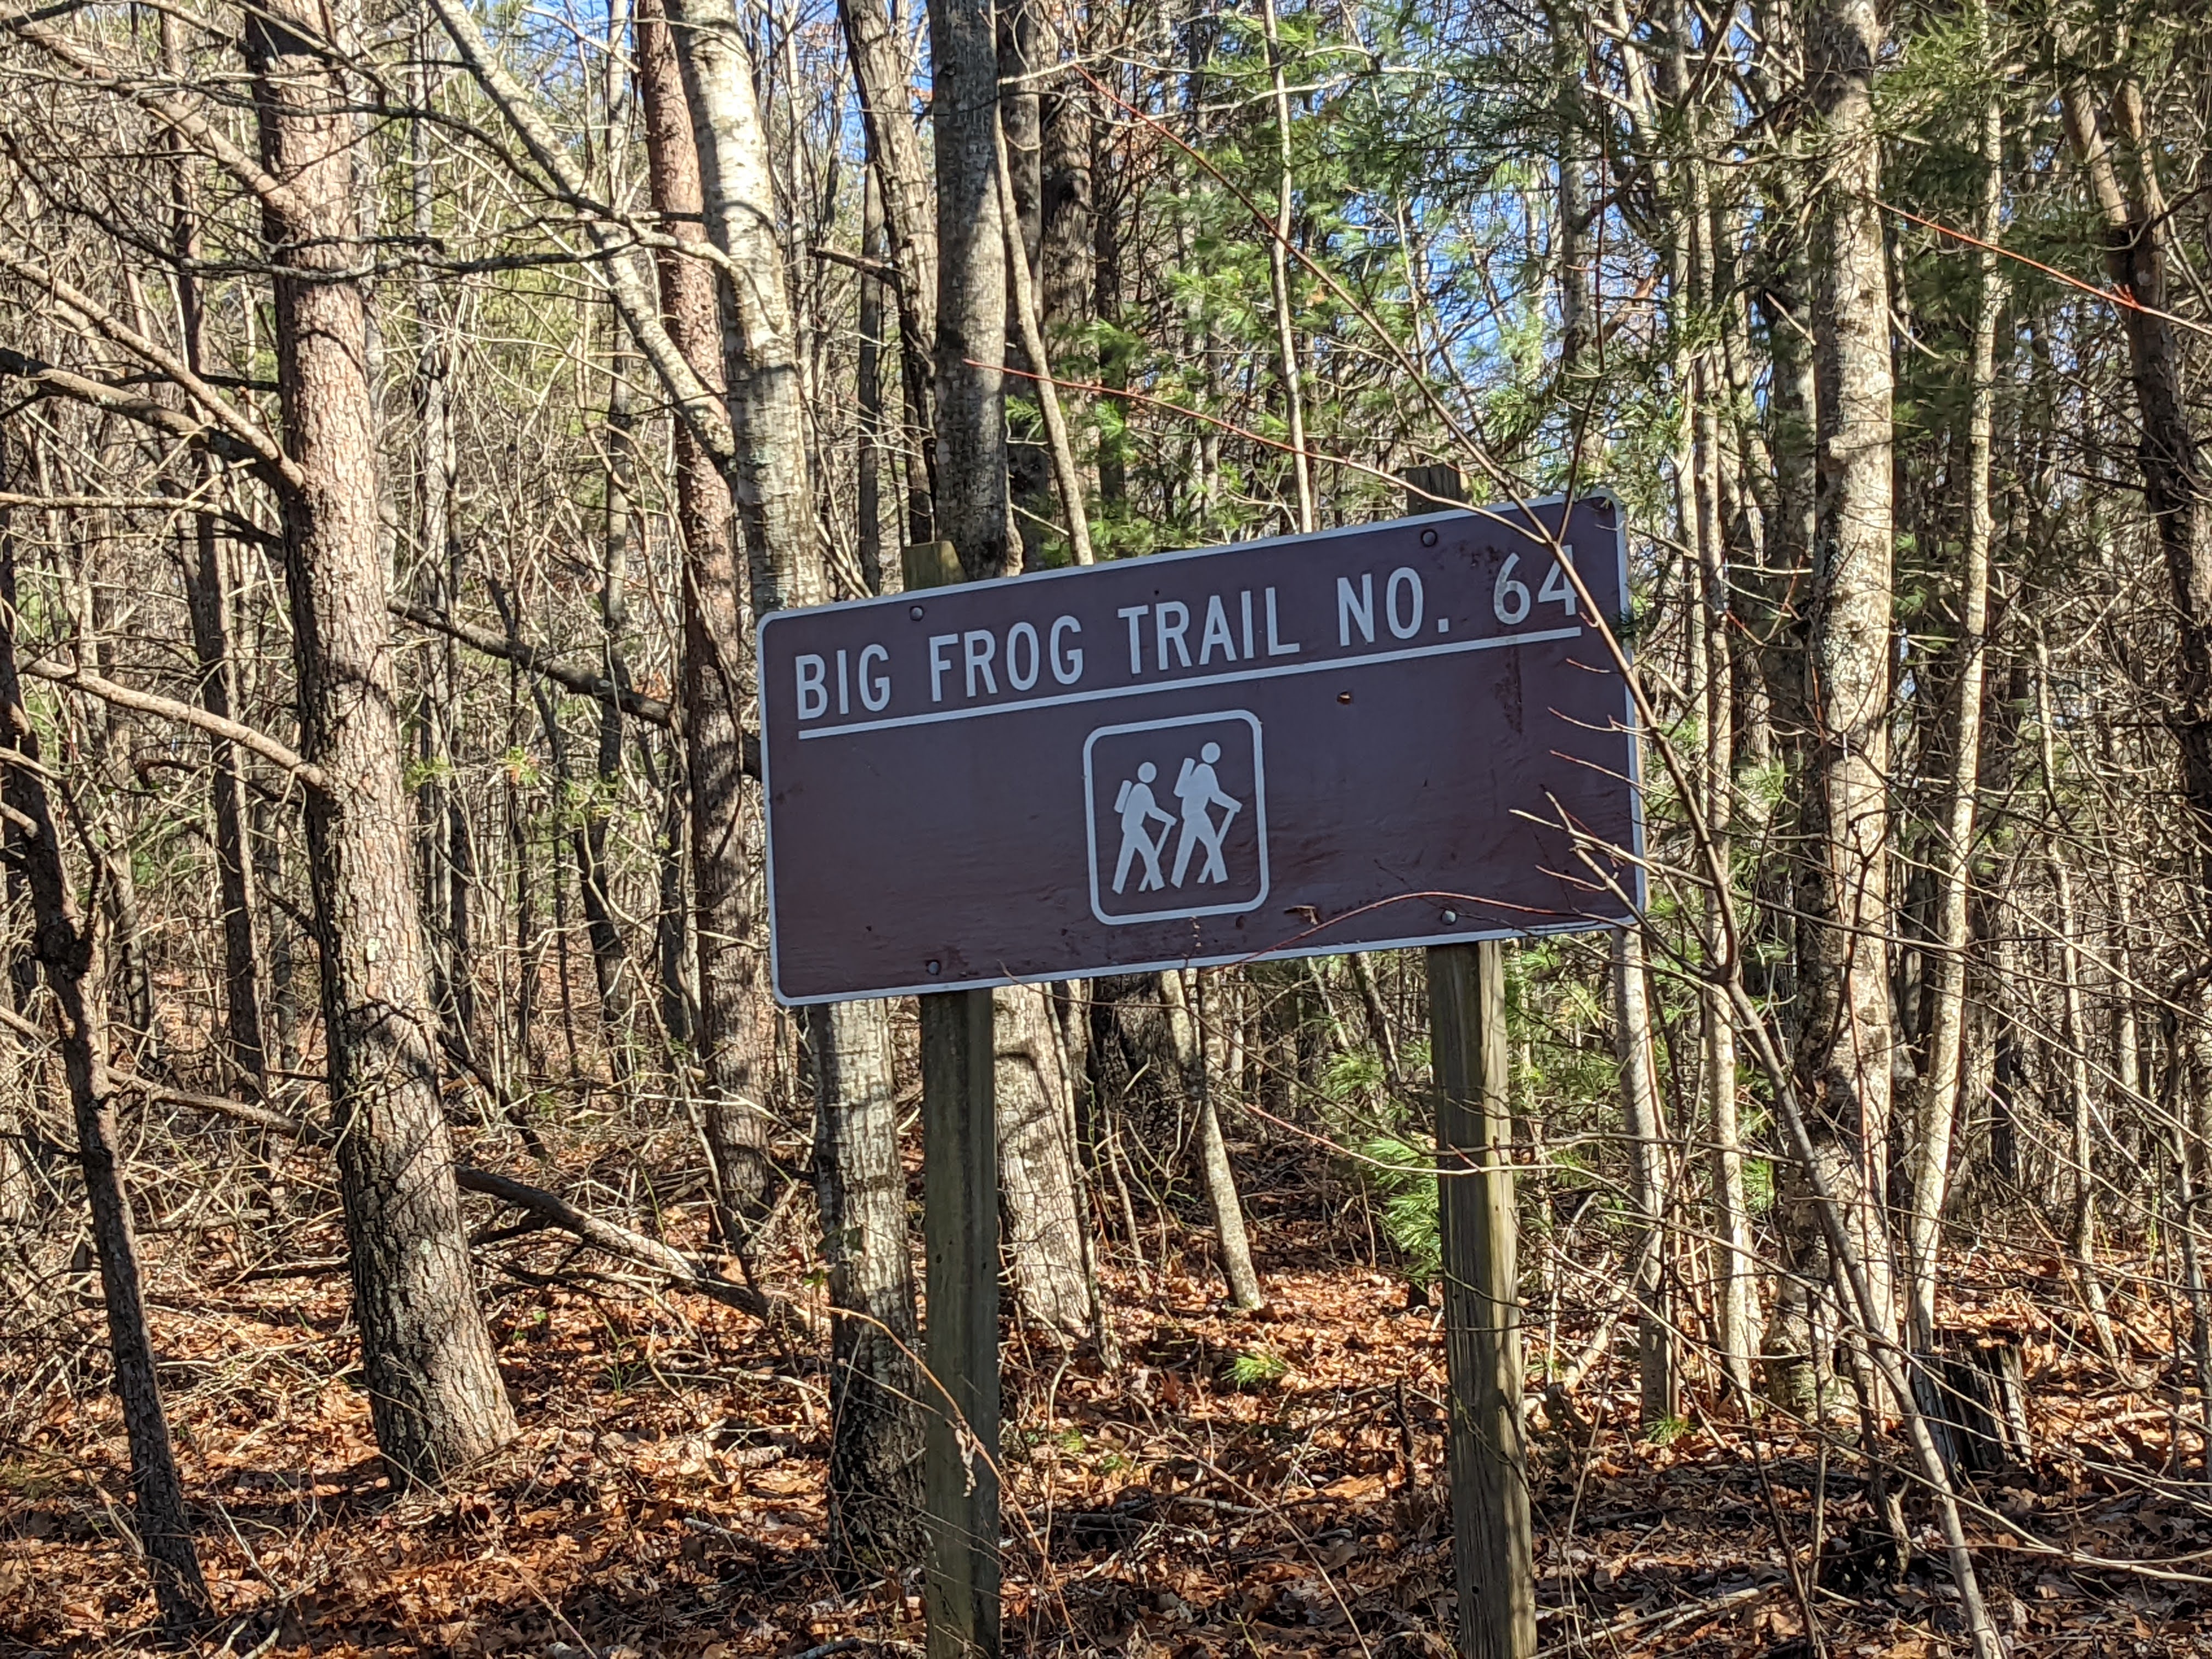 Big Frog Trail No. 64 sign